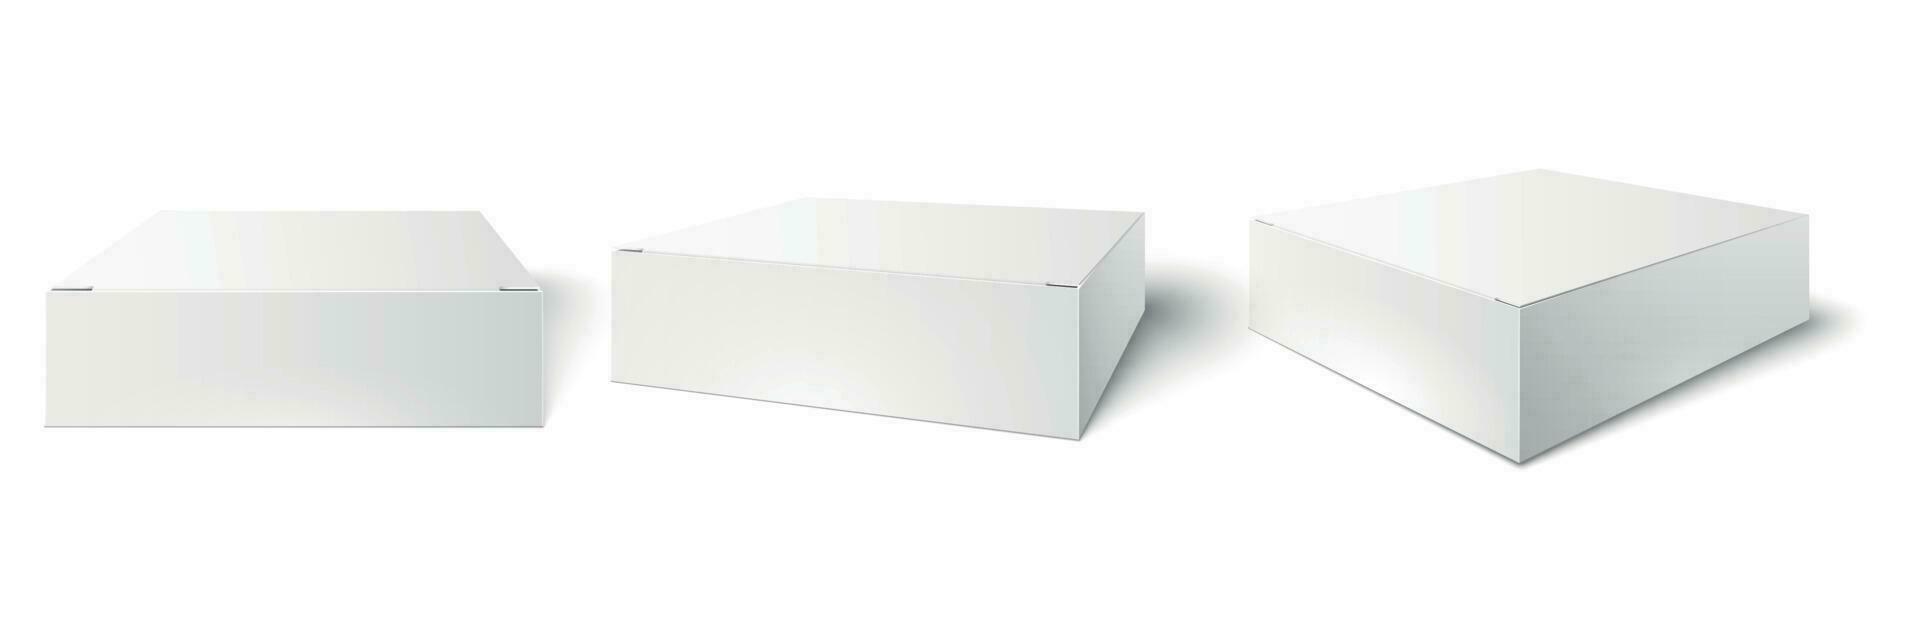 wit verpakking doos. blanco model, pakket kubus perspectief visie en klant Product dozen mockups 3d vector illustratie reeks